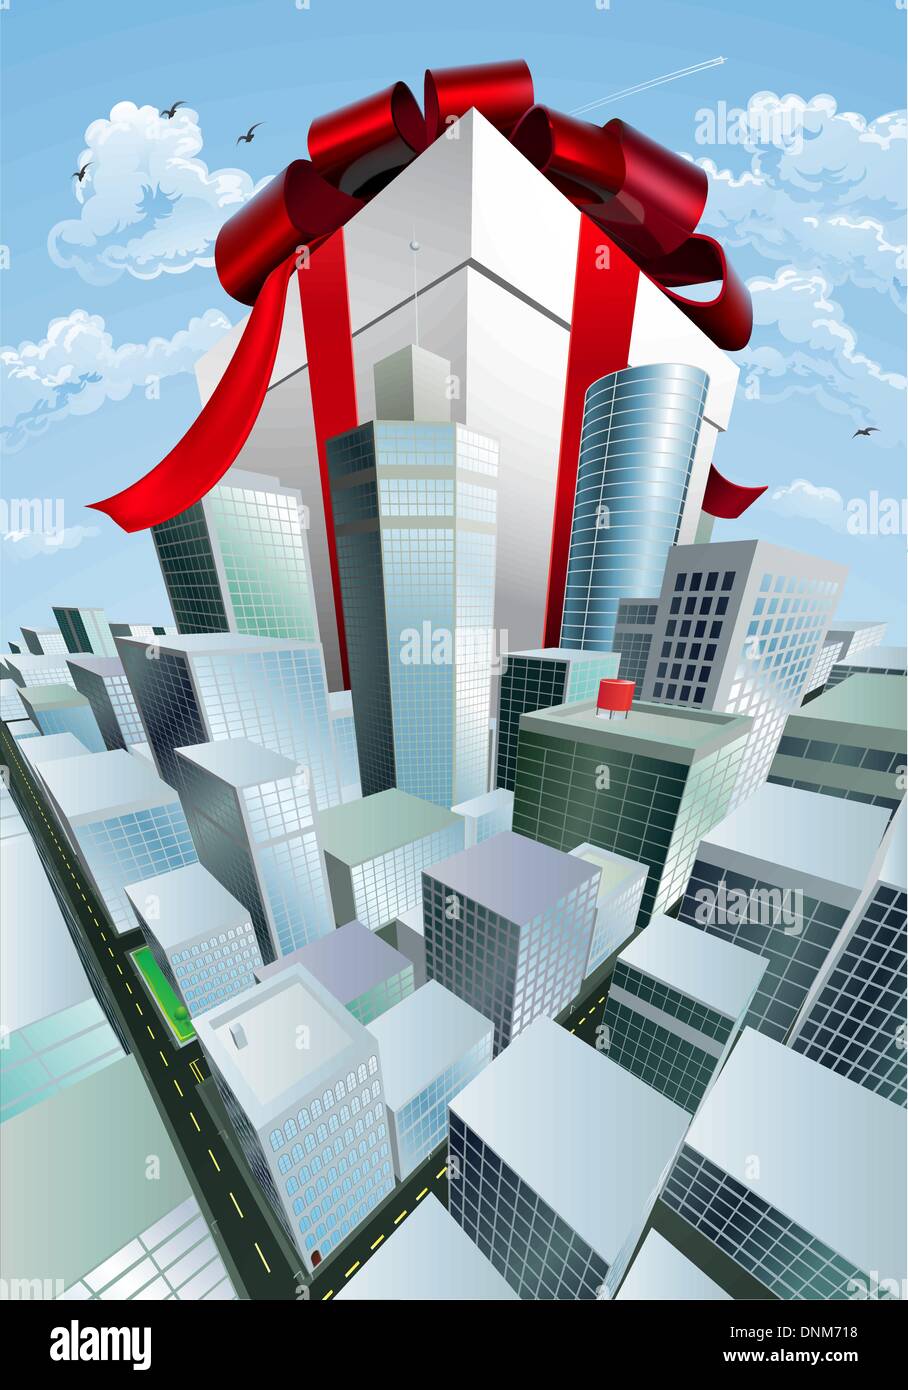 Ein riesiges Geschenk. Konzeptionelle Darstellung der riesige Geschenk mit Schleife, die eine Stadt überragt. Könnte eine massive Verkauf oder Schnäppchen darstellen. Stock Vektor